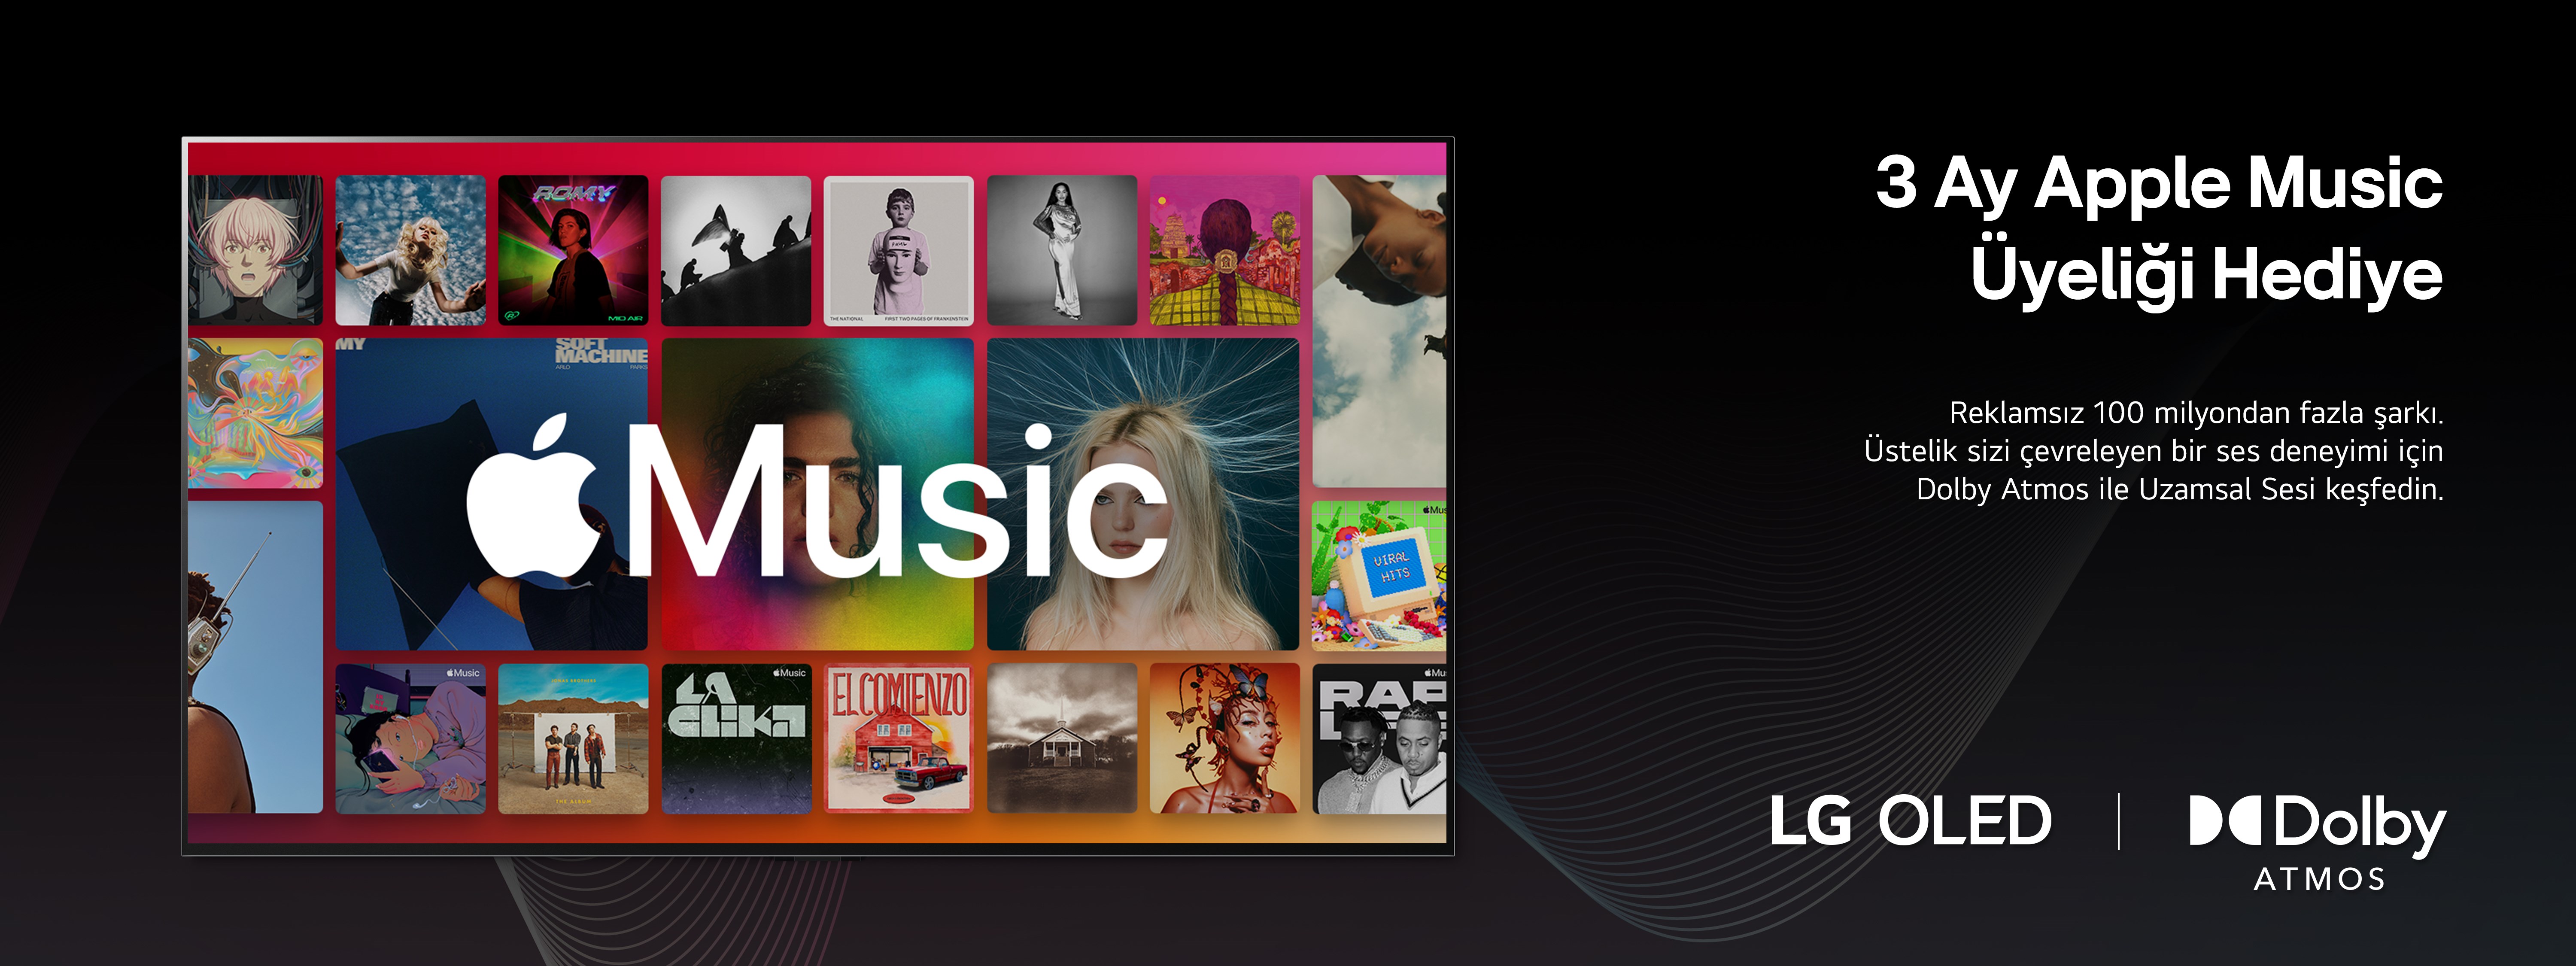 LG, Smart TV kullanıcılarına 3 ay Apple Music hediye!